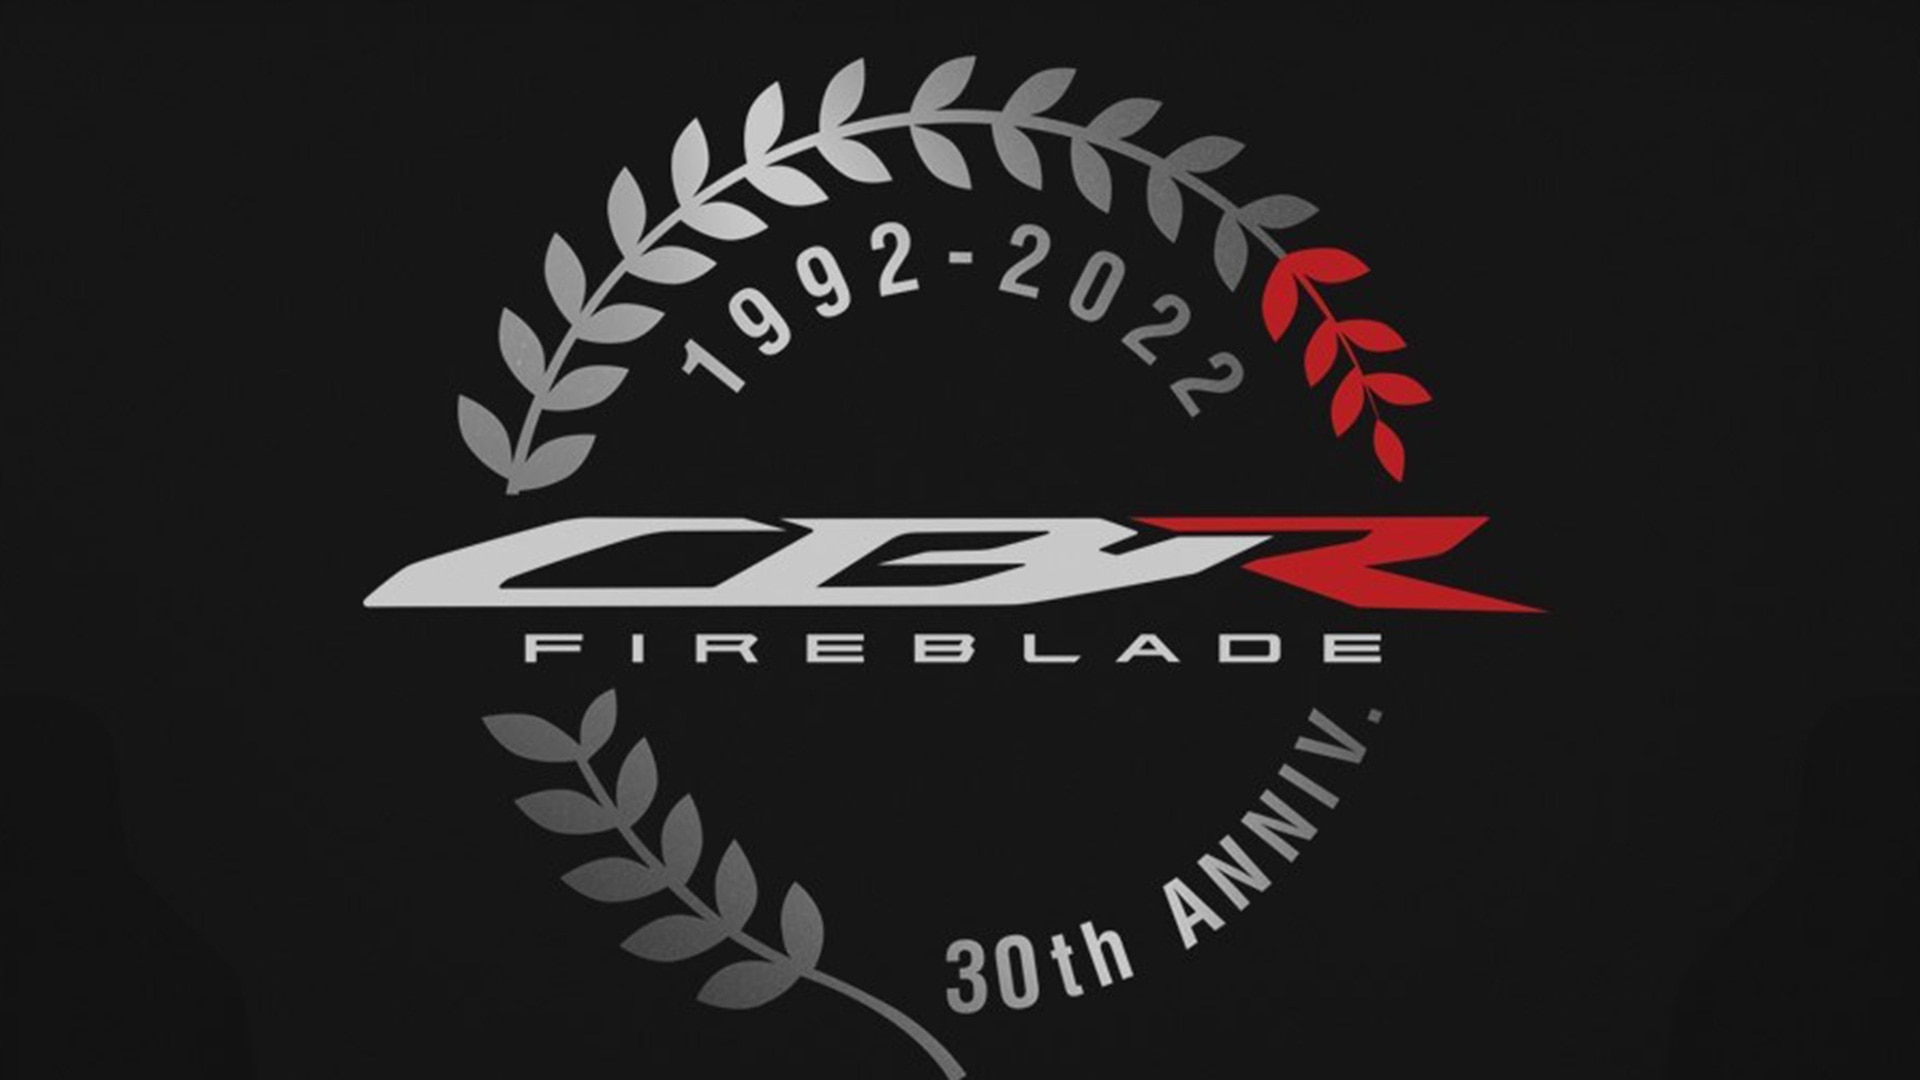 Fireblade logo